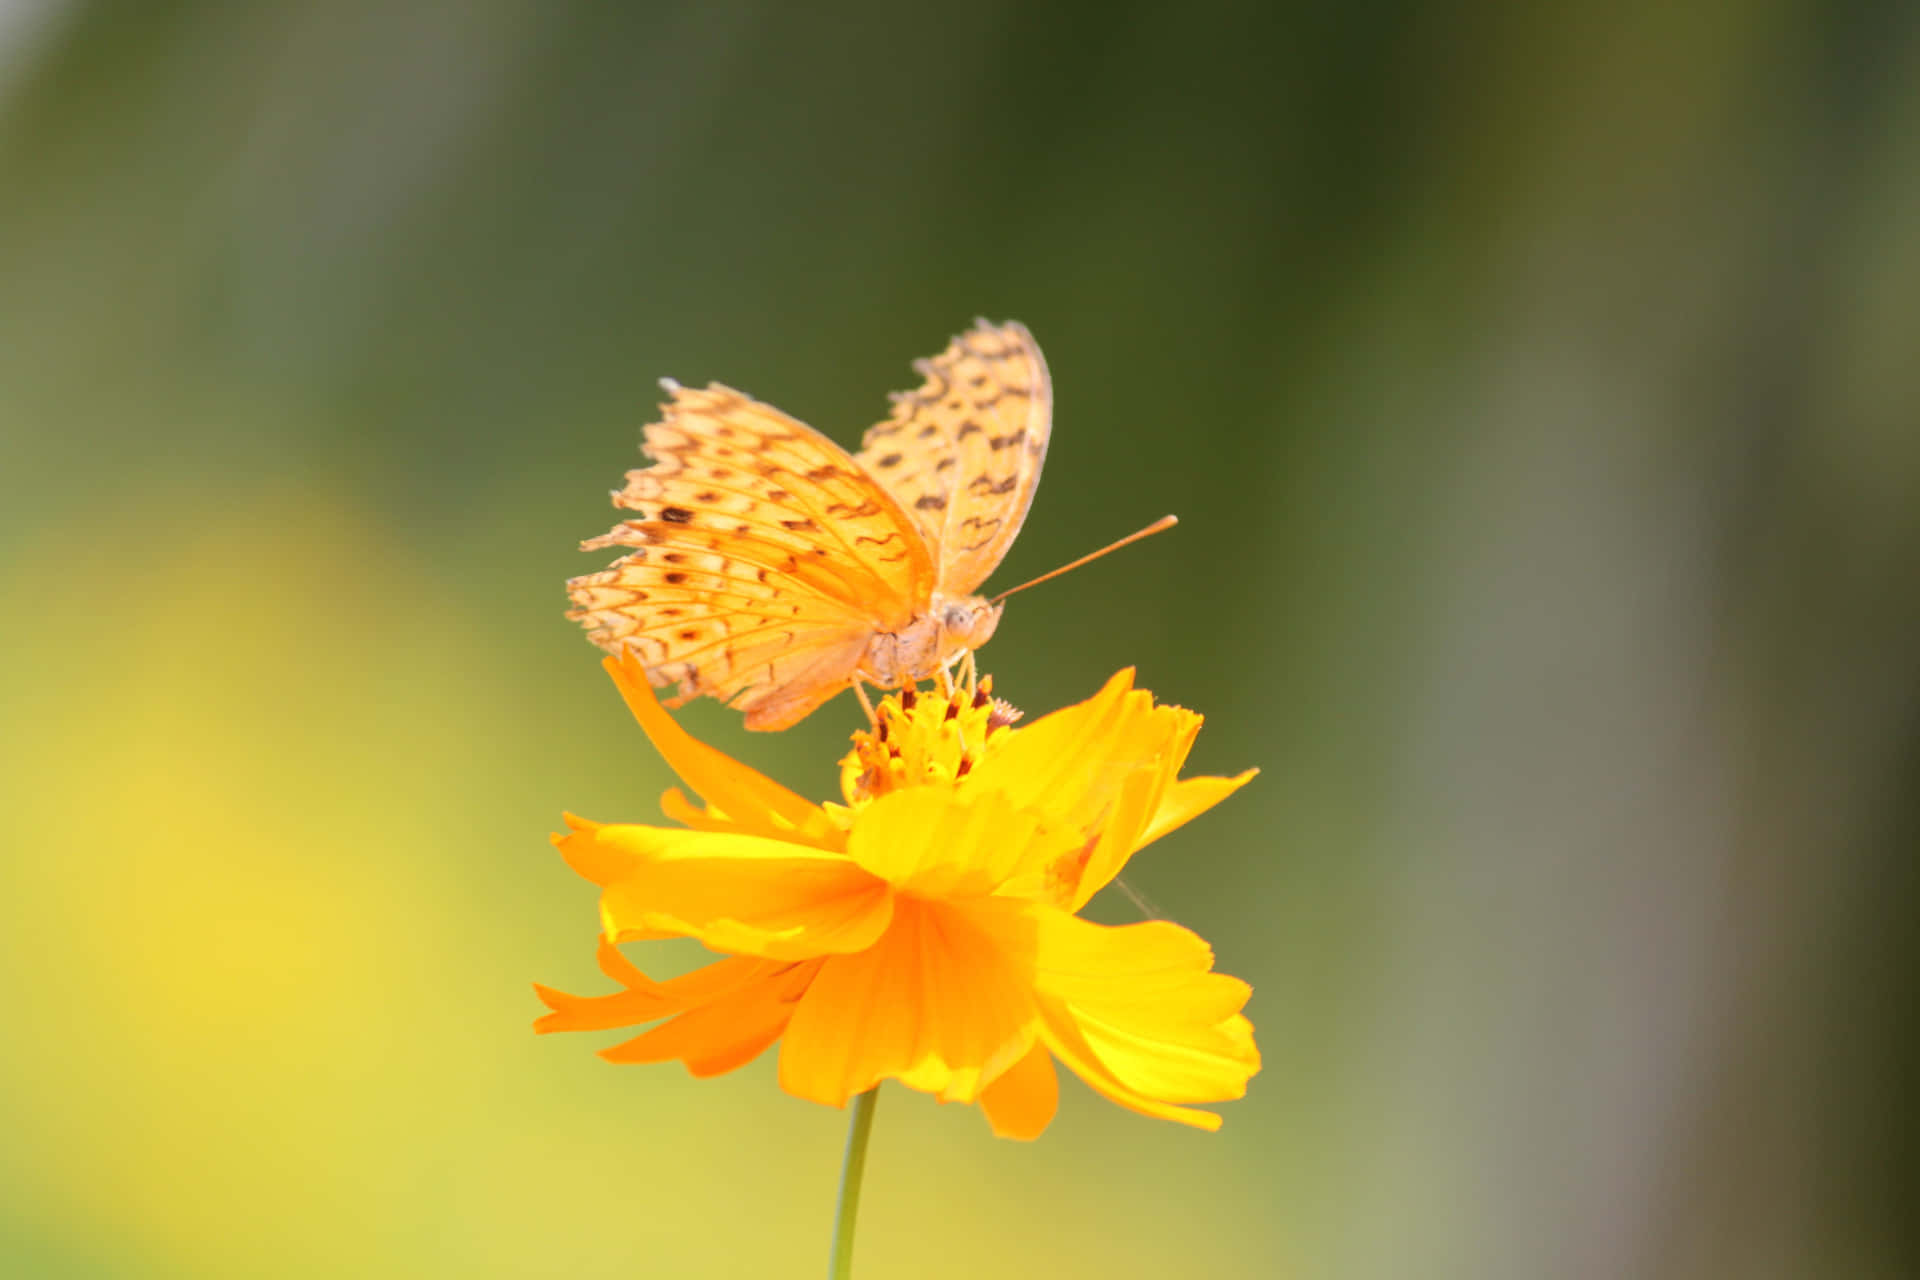 Erhellensie Ihren Tag Mit Diesen Lebendigen Gelben Schmetterlingen! Wallpaper